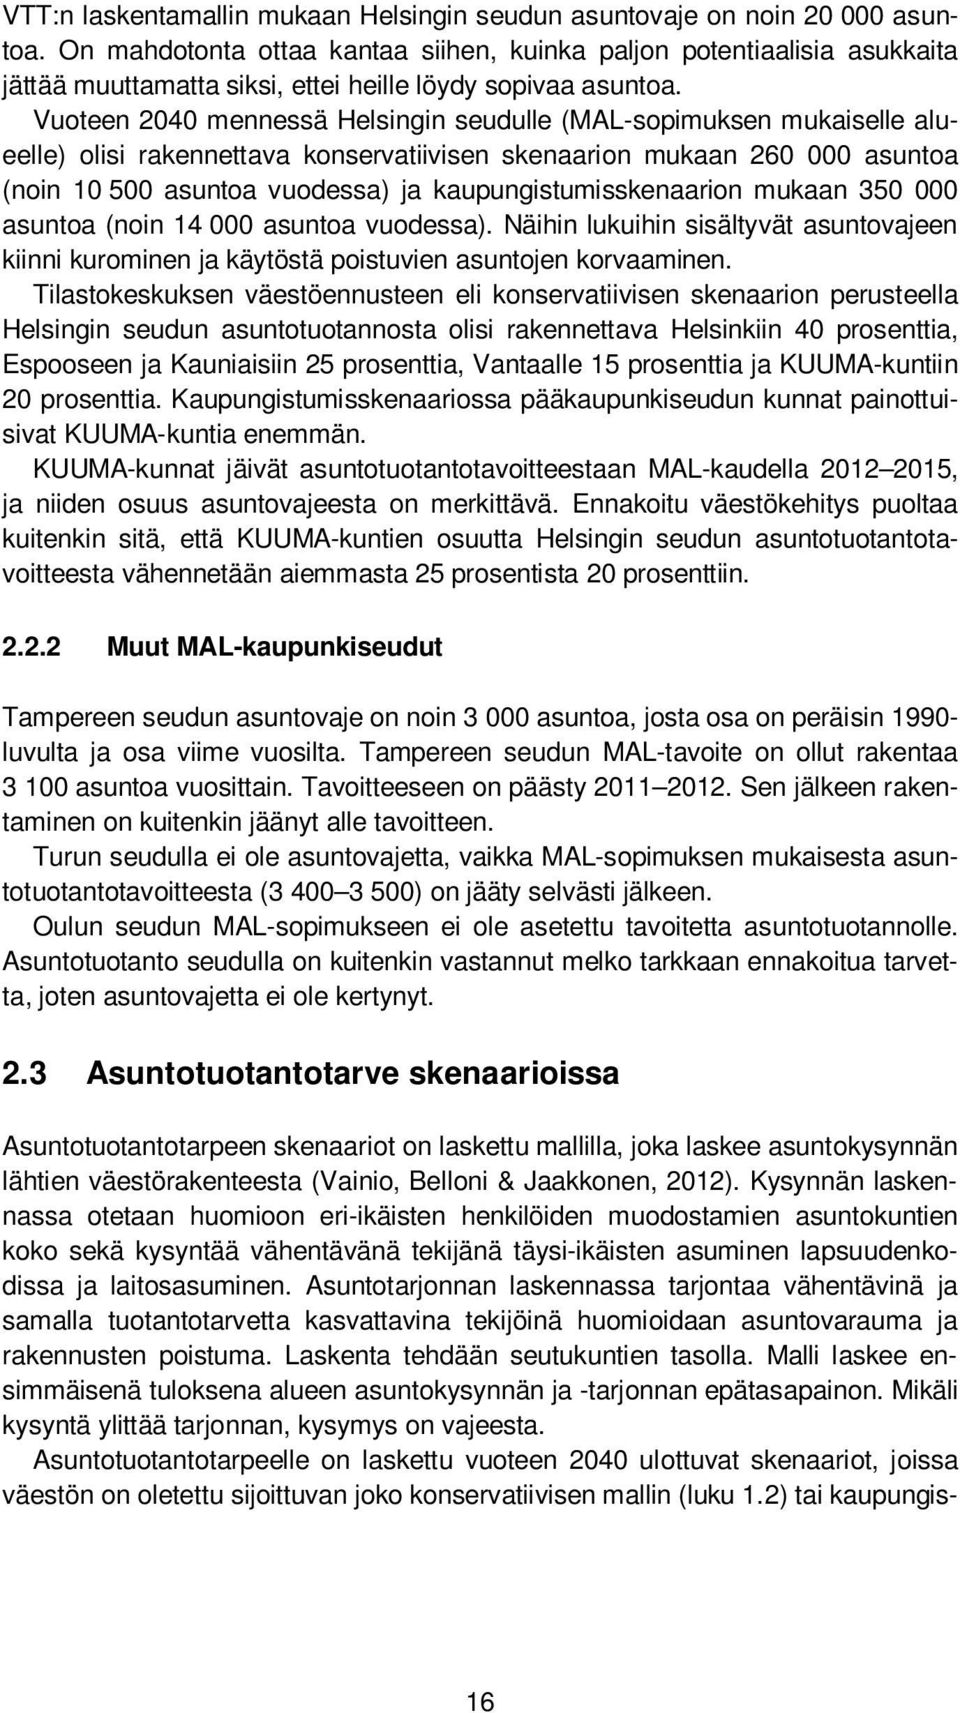 Vuoteen 2040 mennessä Helsingin seudulle (MAL-sopimuksen mukaiselle alueelle) olisi rakennettava konservatiivisen skenaarion mukaan 260 000 asuntoa (noin 10 500 asuntoa vuodessa) ja